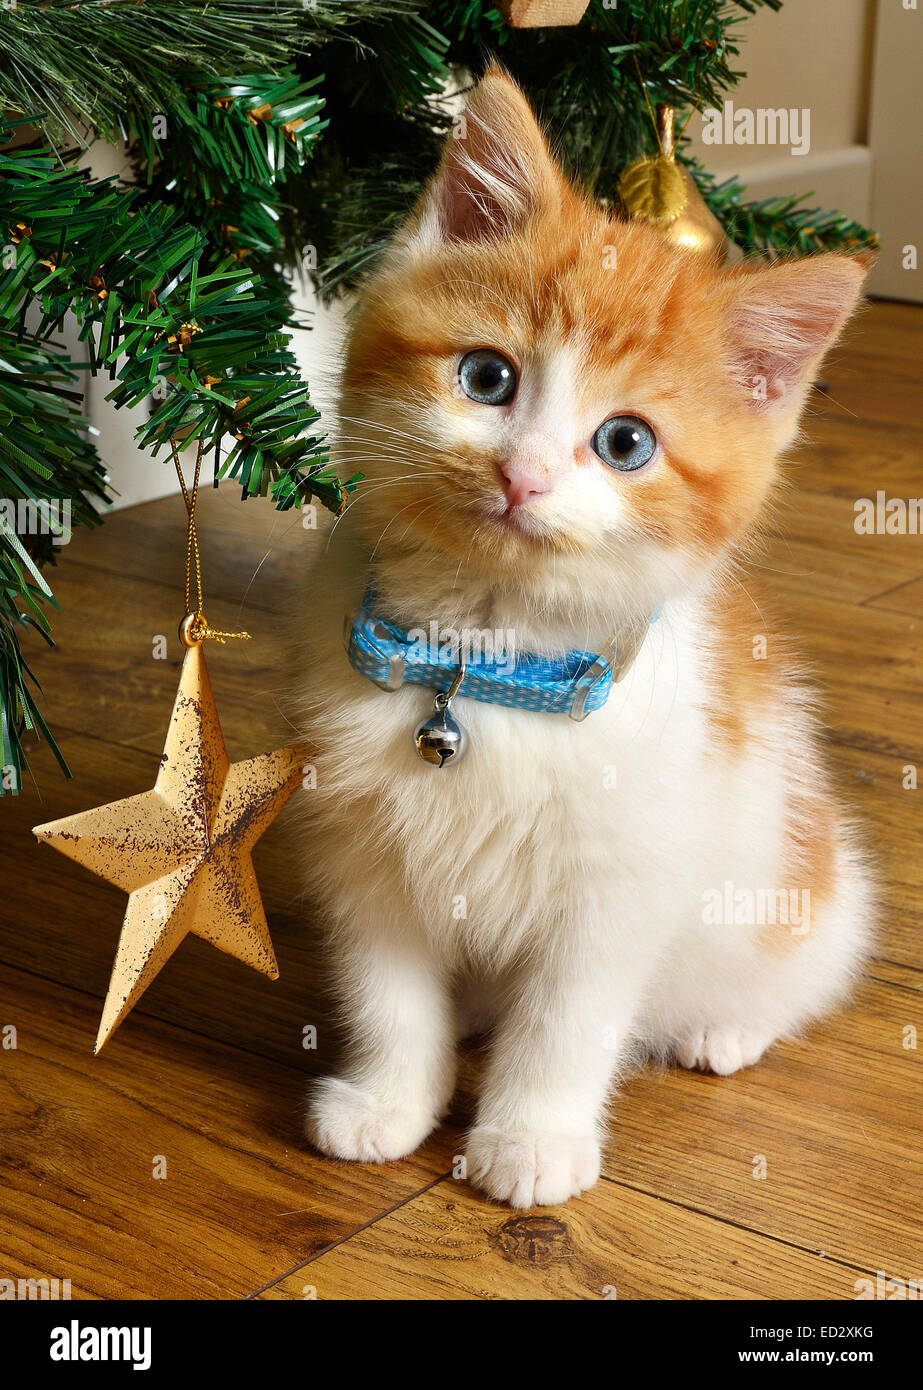 Ein Rettungs-Katze Kätzchen neben dem Weihnachtsbaum und Sterne Dekoration, niedlich. Stockfoto